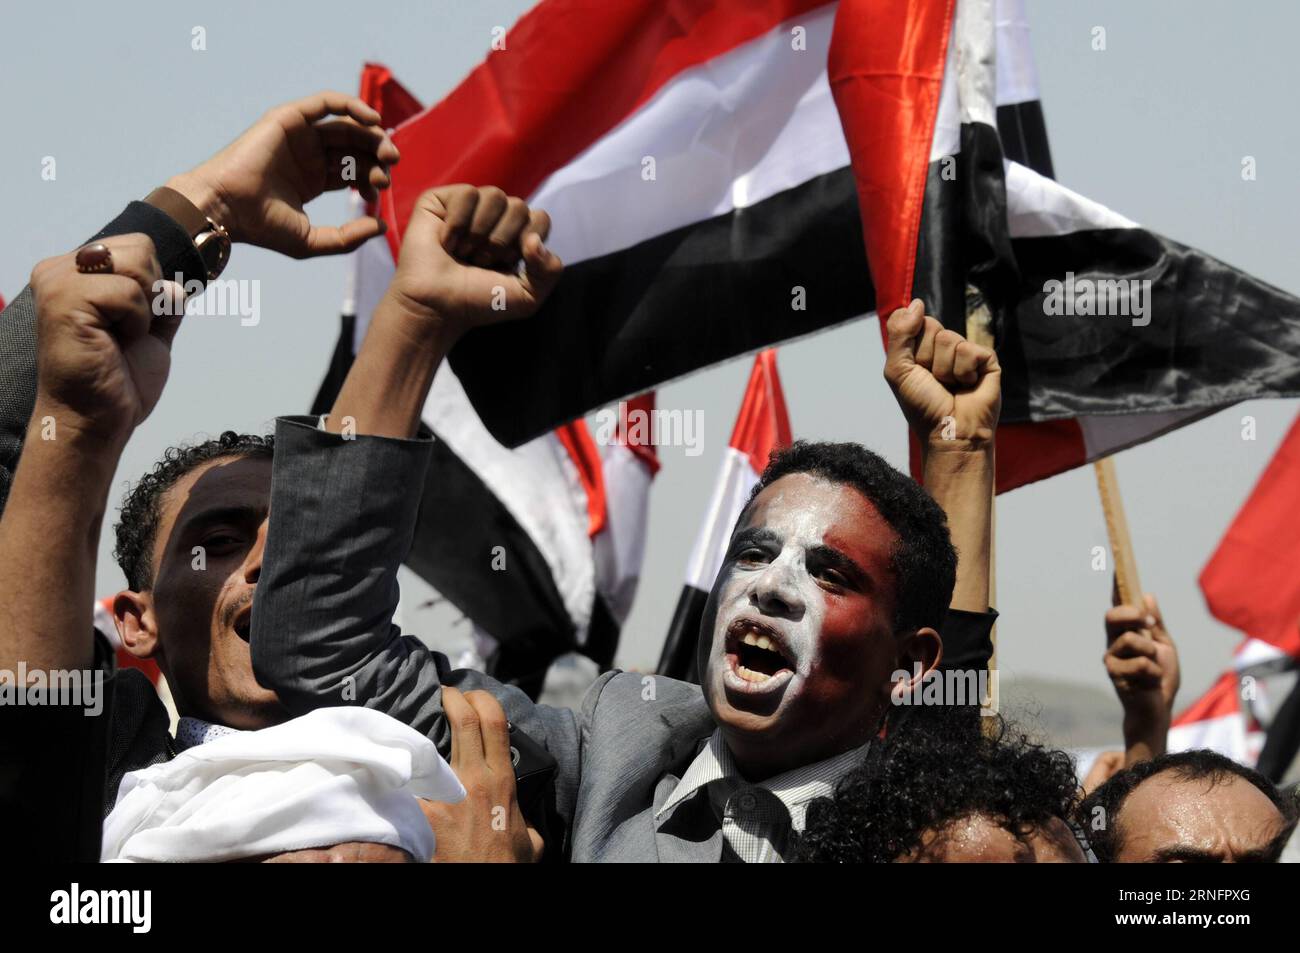 (160821) -- SANAA, 20. August 2016 -- die Leute schreien Parolen während einer Kundgebung, um Unterstützung für einen politischen rat in Sanaa, Jemen, 20. August 2016 zu zeigen. Millionen von Menschen aus allen jemenitischen Gebieten drängten sich am Samstag im Zentrum der jemenitischen Hauptstadt Sanaa, um die Bildung eines neuen regierenden politischen rates unter dem Vorsitz der Huthi-Rebellen und ihrer verbündeten mächtigen Partei des ehemaligen Präsidenten Ali Abdullah Saleh zu unterstützen und zu segnen. )(zcc) JEMEN-SANAA-RALLY HanixAli PUBLICATIONxNOTxINxCHN 160821 Sanaa 20. August 2016 Prominente brüllen Parolen während einer Rally, um Unterstützung für einen politischen Rat in Sanaa YE zu zeigen Stockfoto